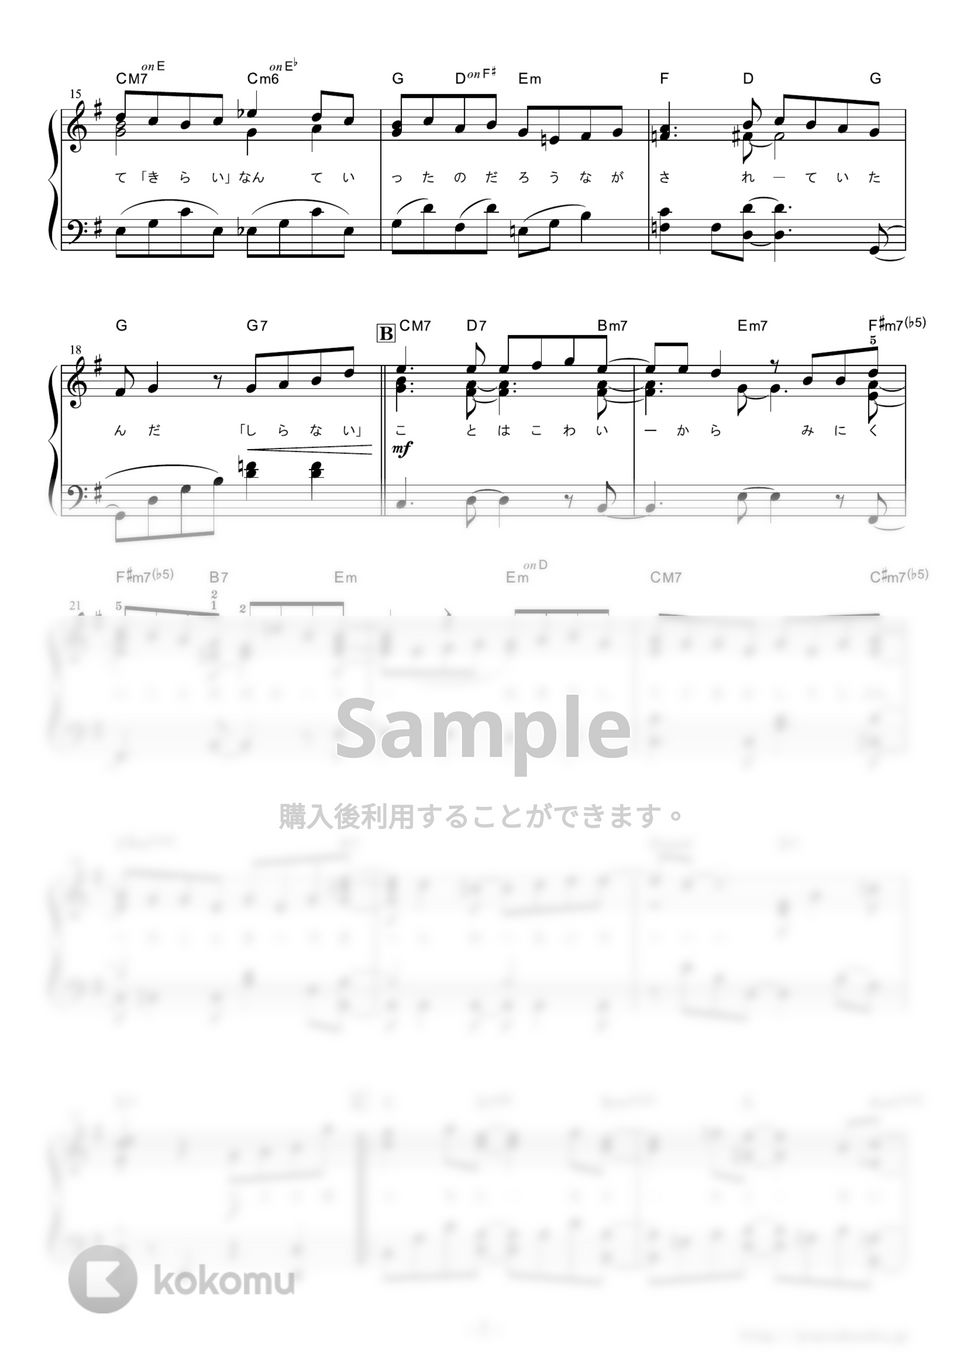 SEKAI NO OWARI - プレゼント (第82回(平成27年度)NHK全国学校音楽コンクール課題曲) by ピアノの本棚